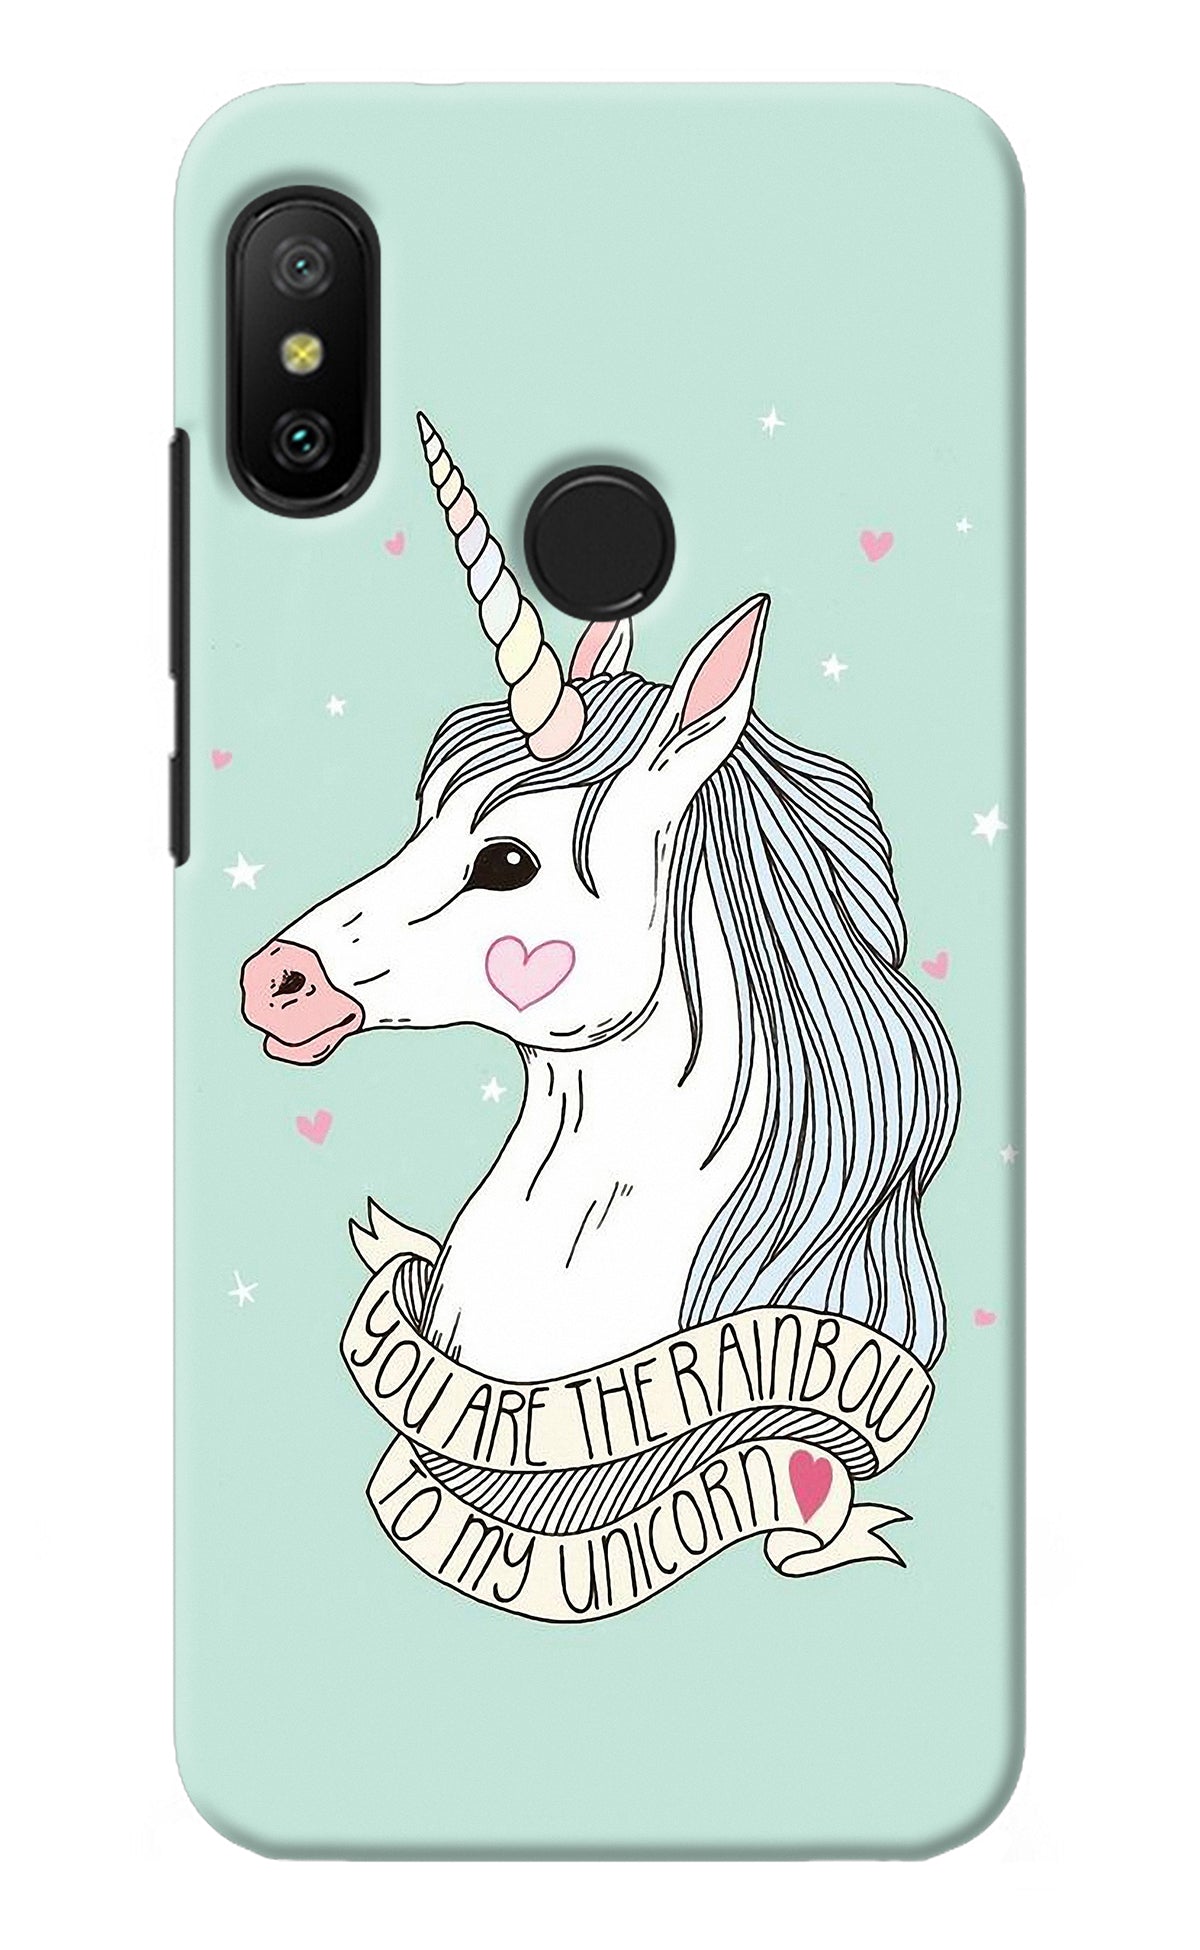 Unicorn Wallpaper Redmi 6 Pro Back Cover